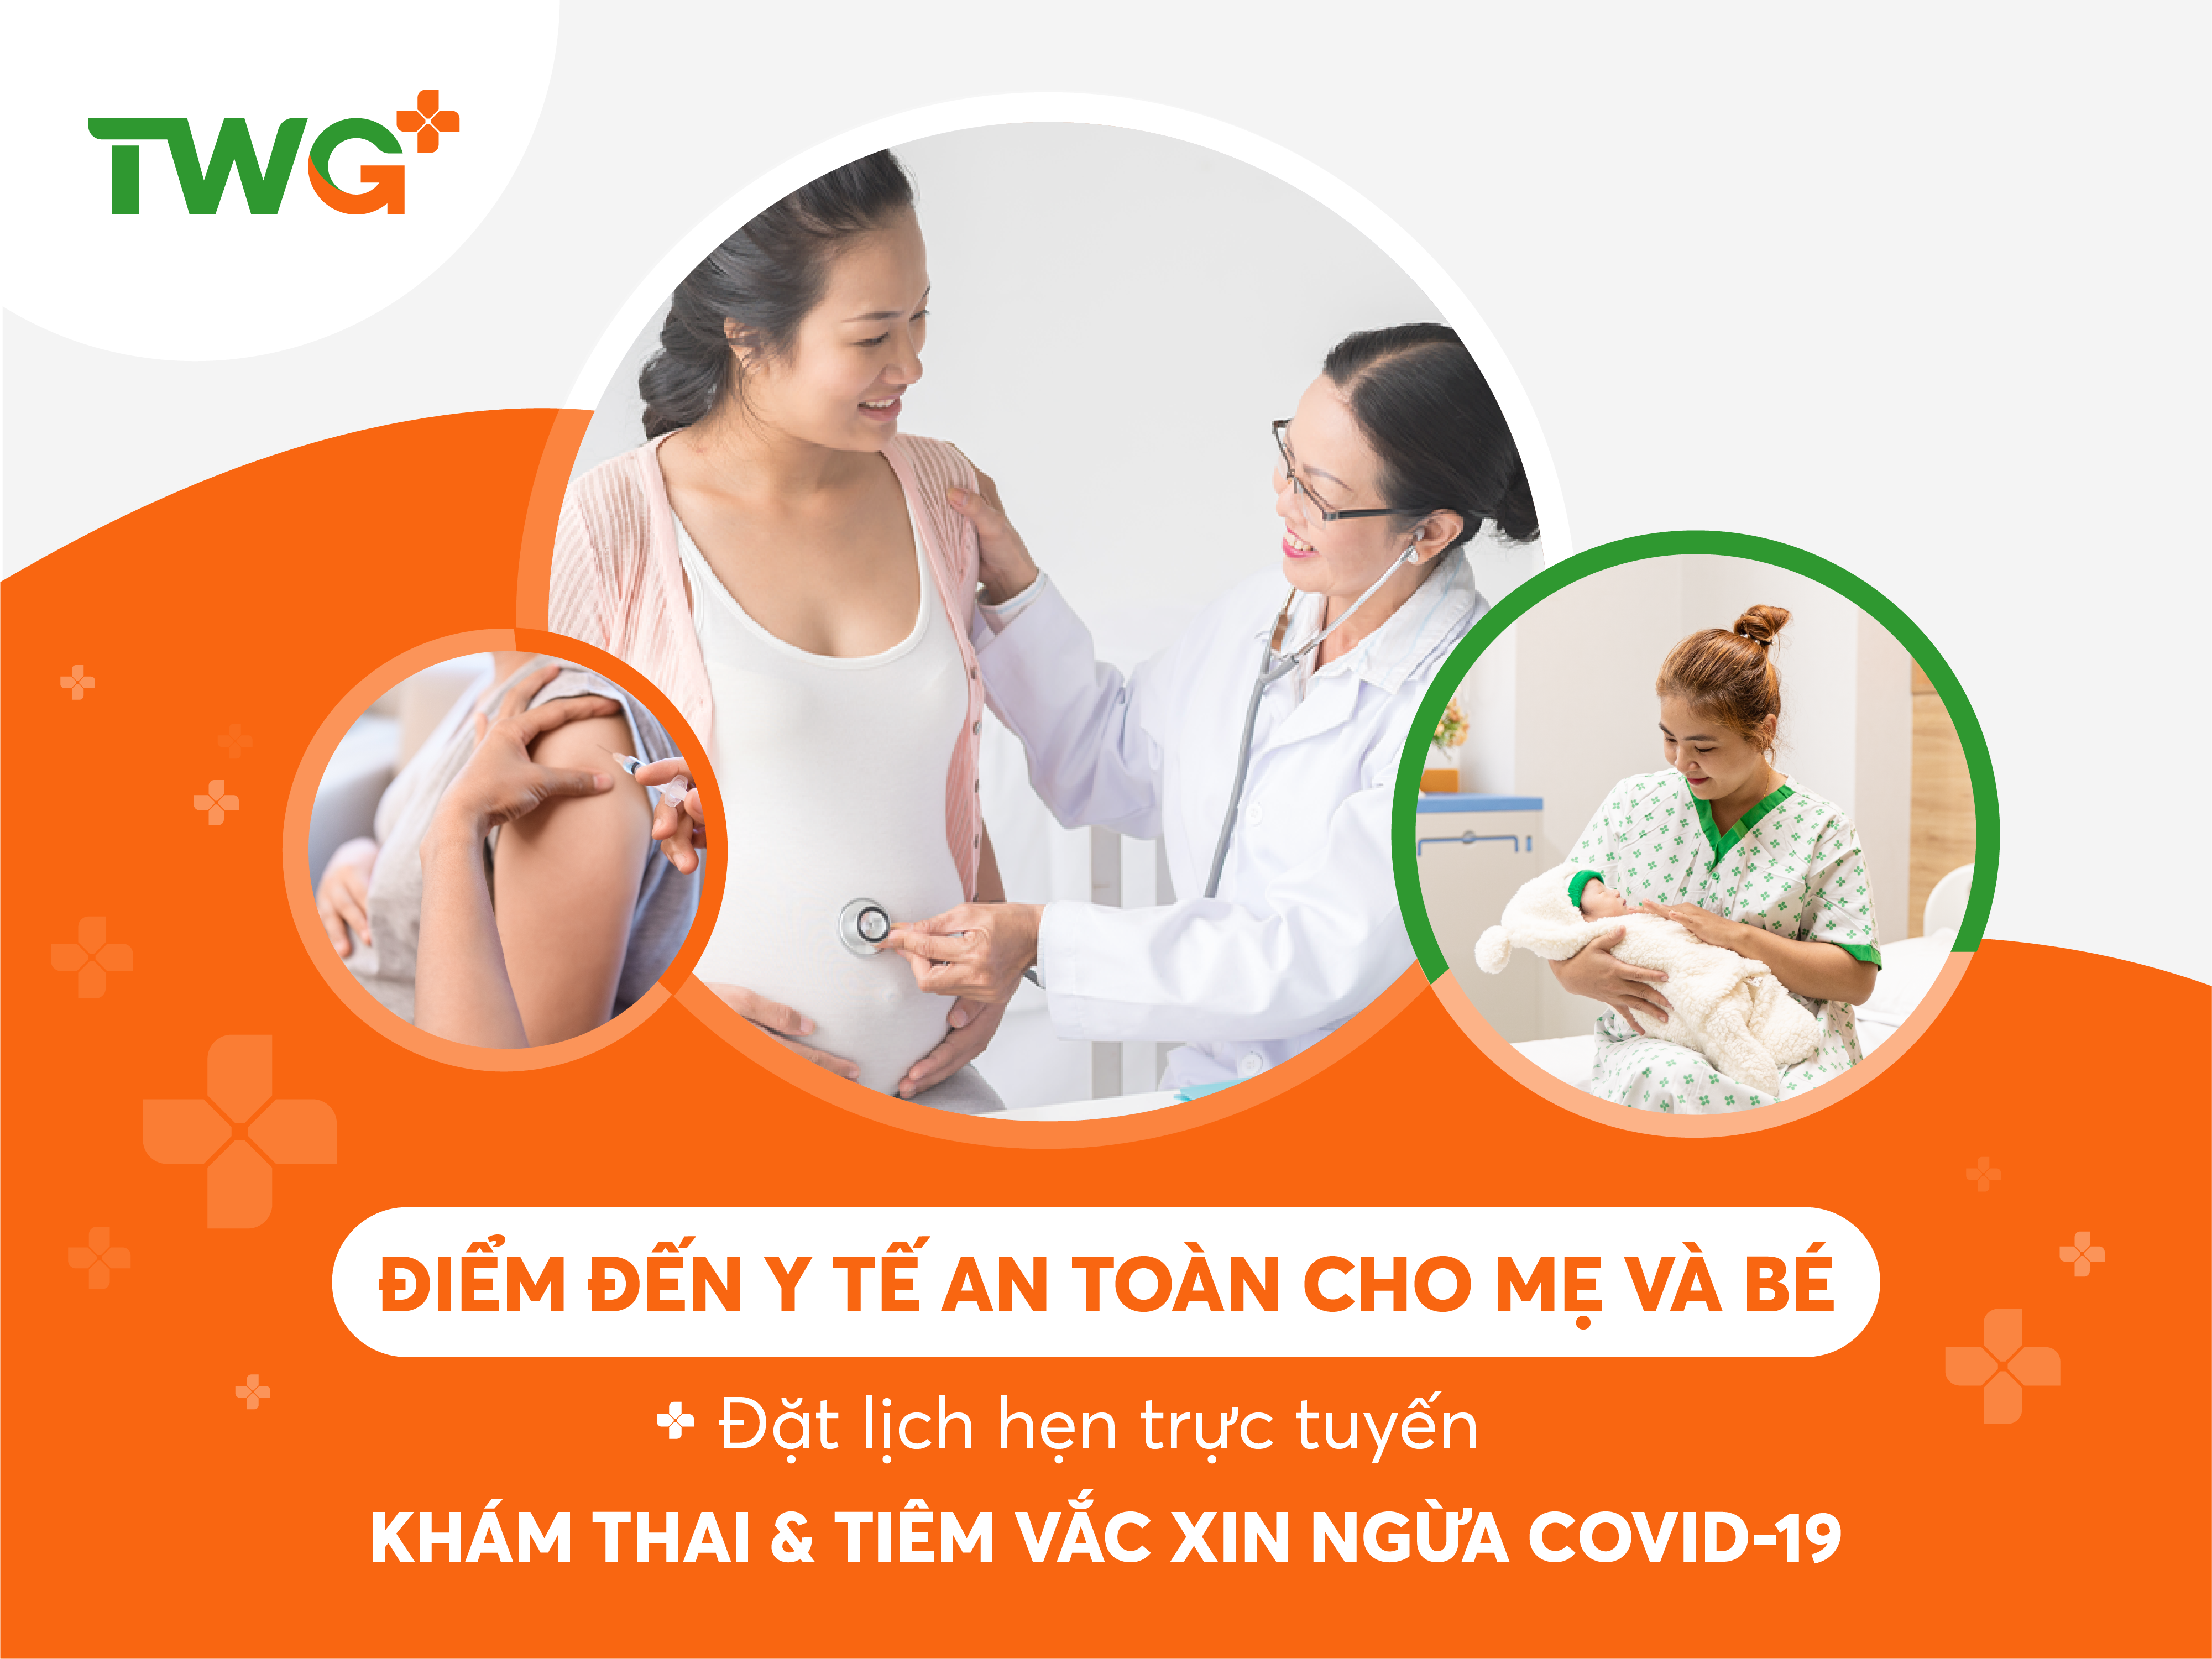 TWG Long An - Điểm đến y tế tin cậy, an toàn cho Mẹ và bé trong mùa dịch